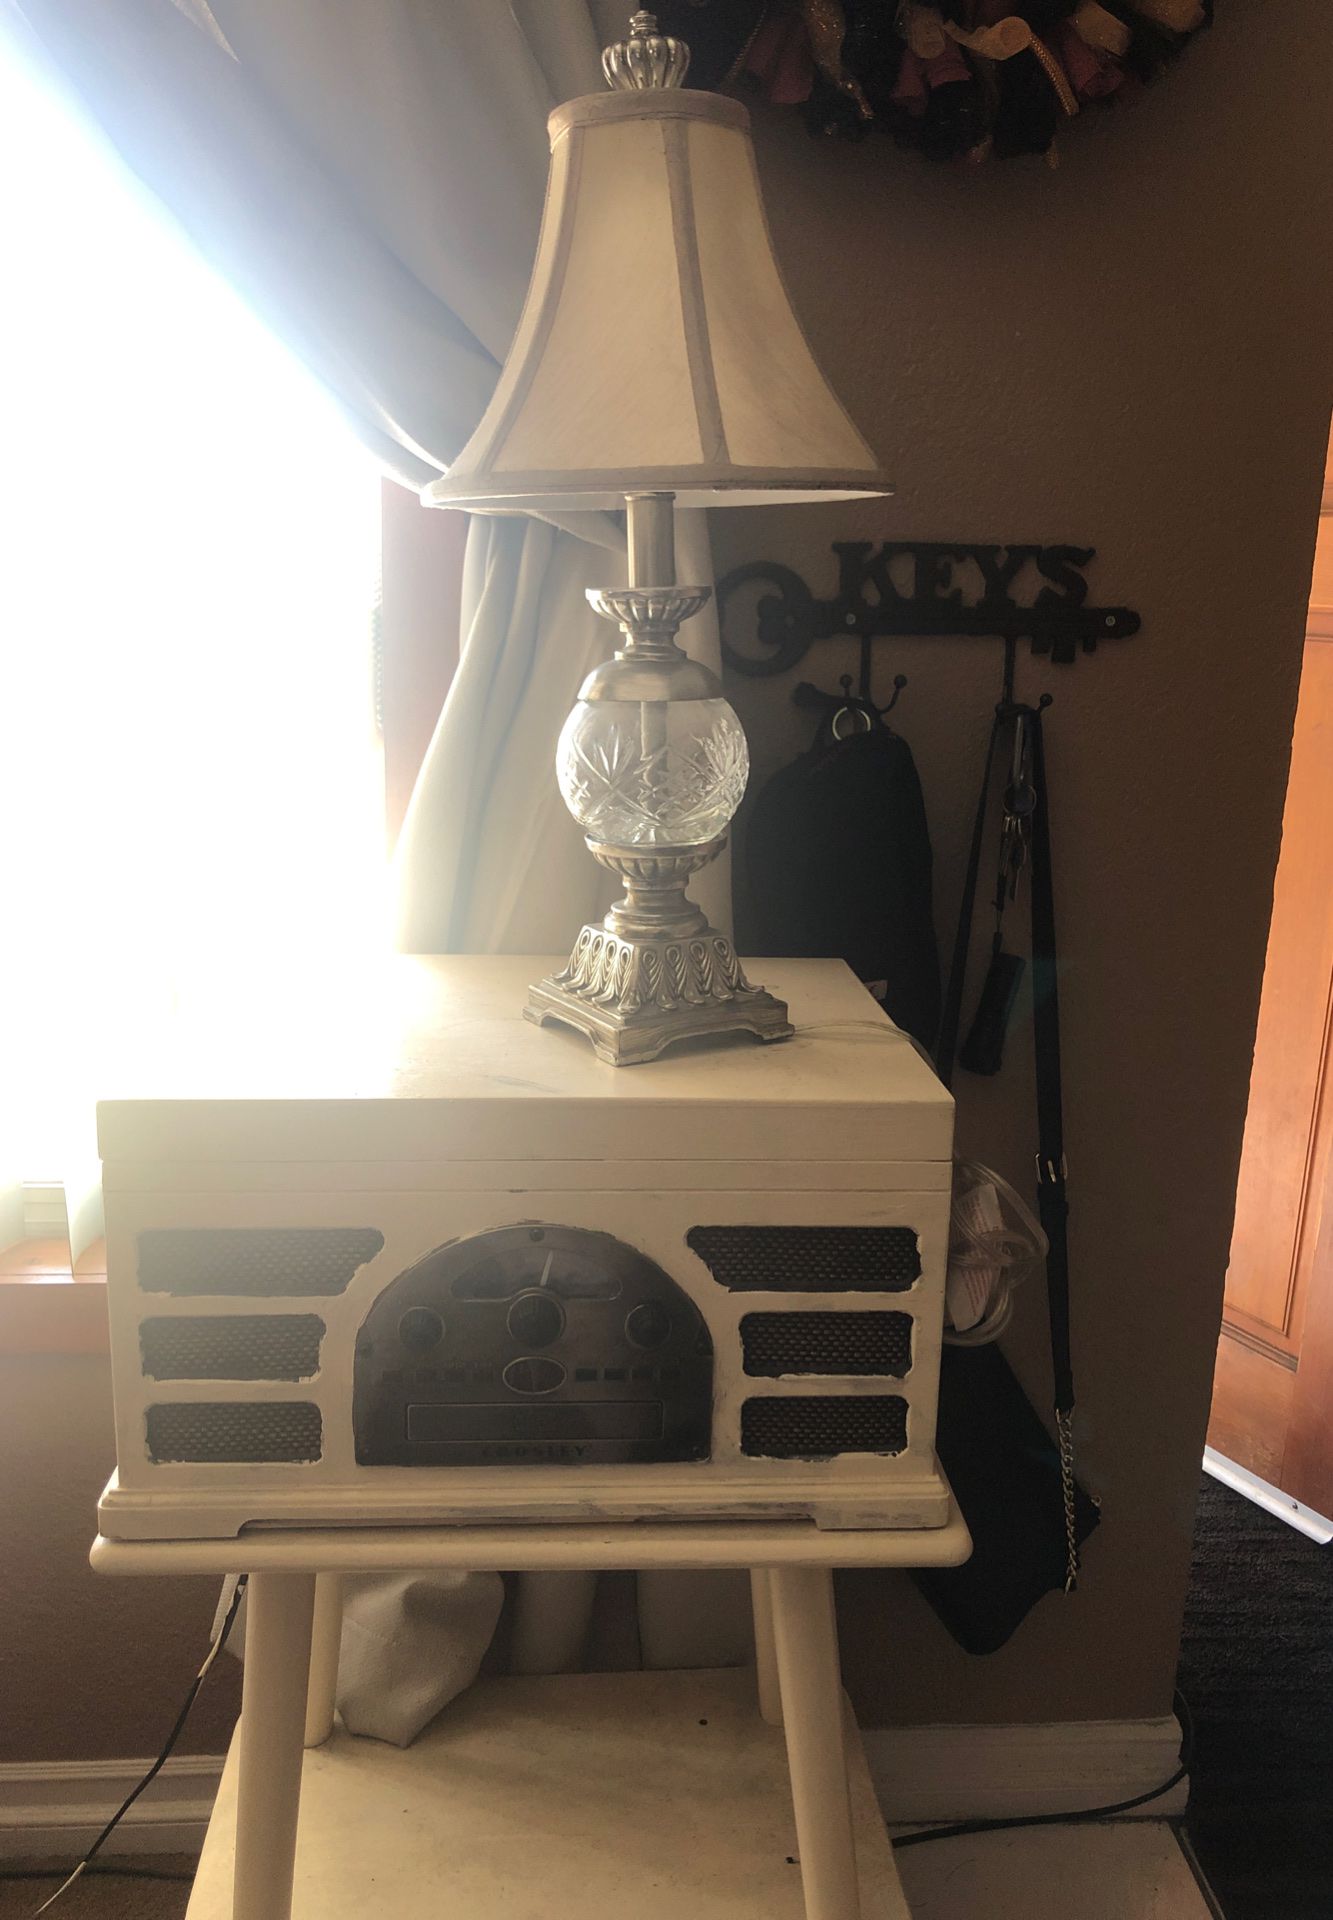 Old skool radio. And lamp